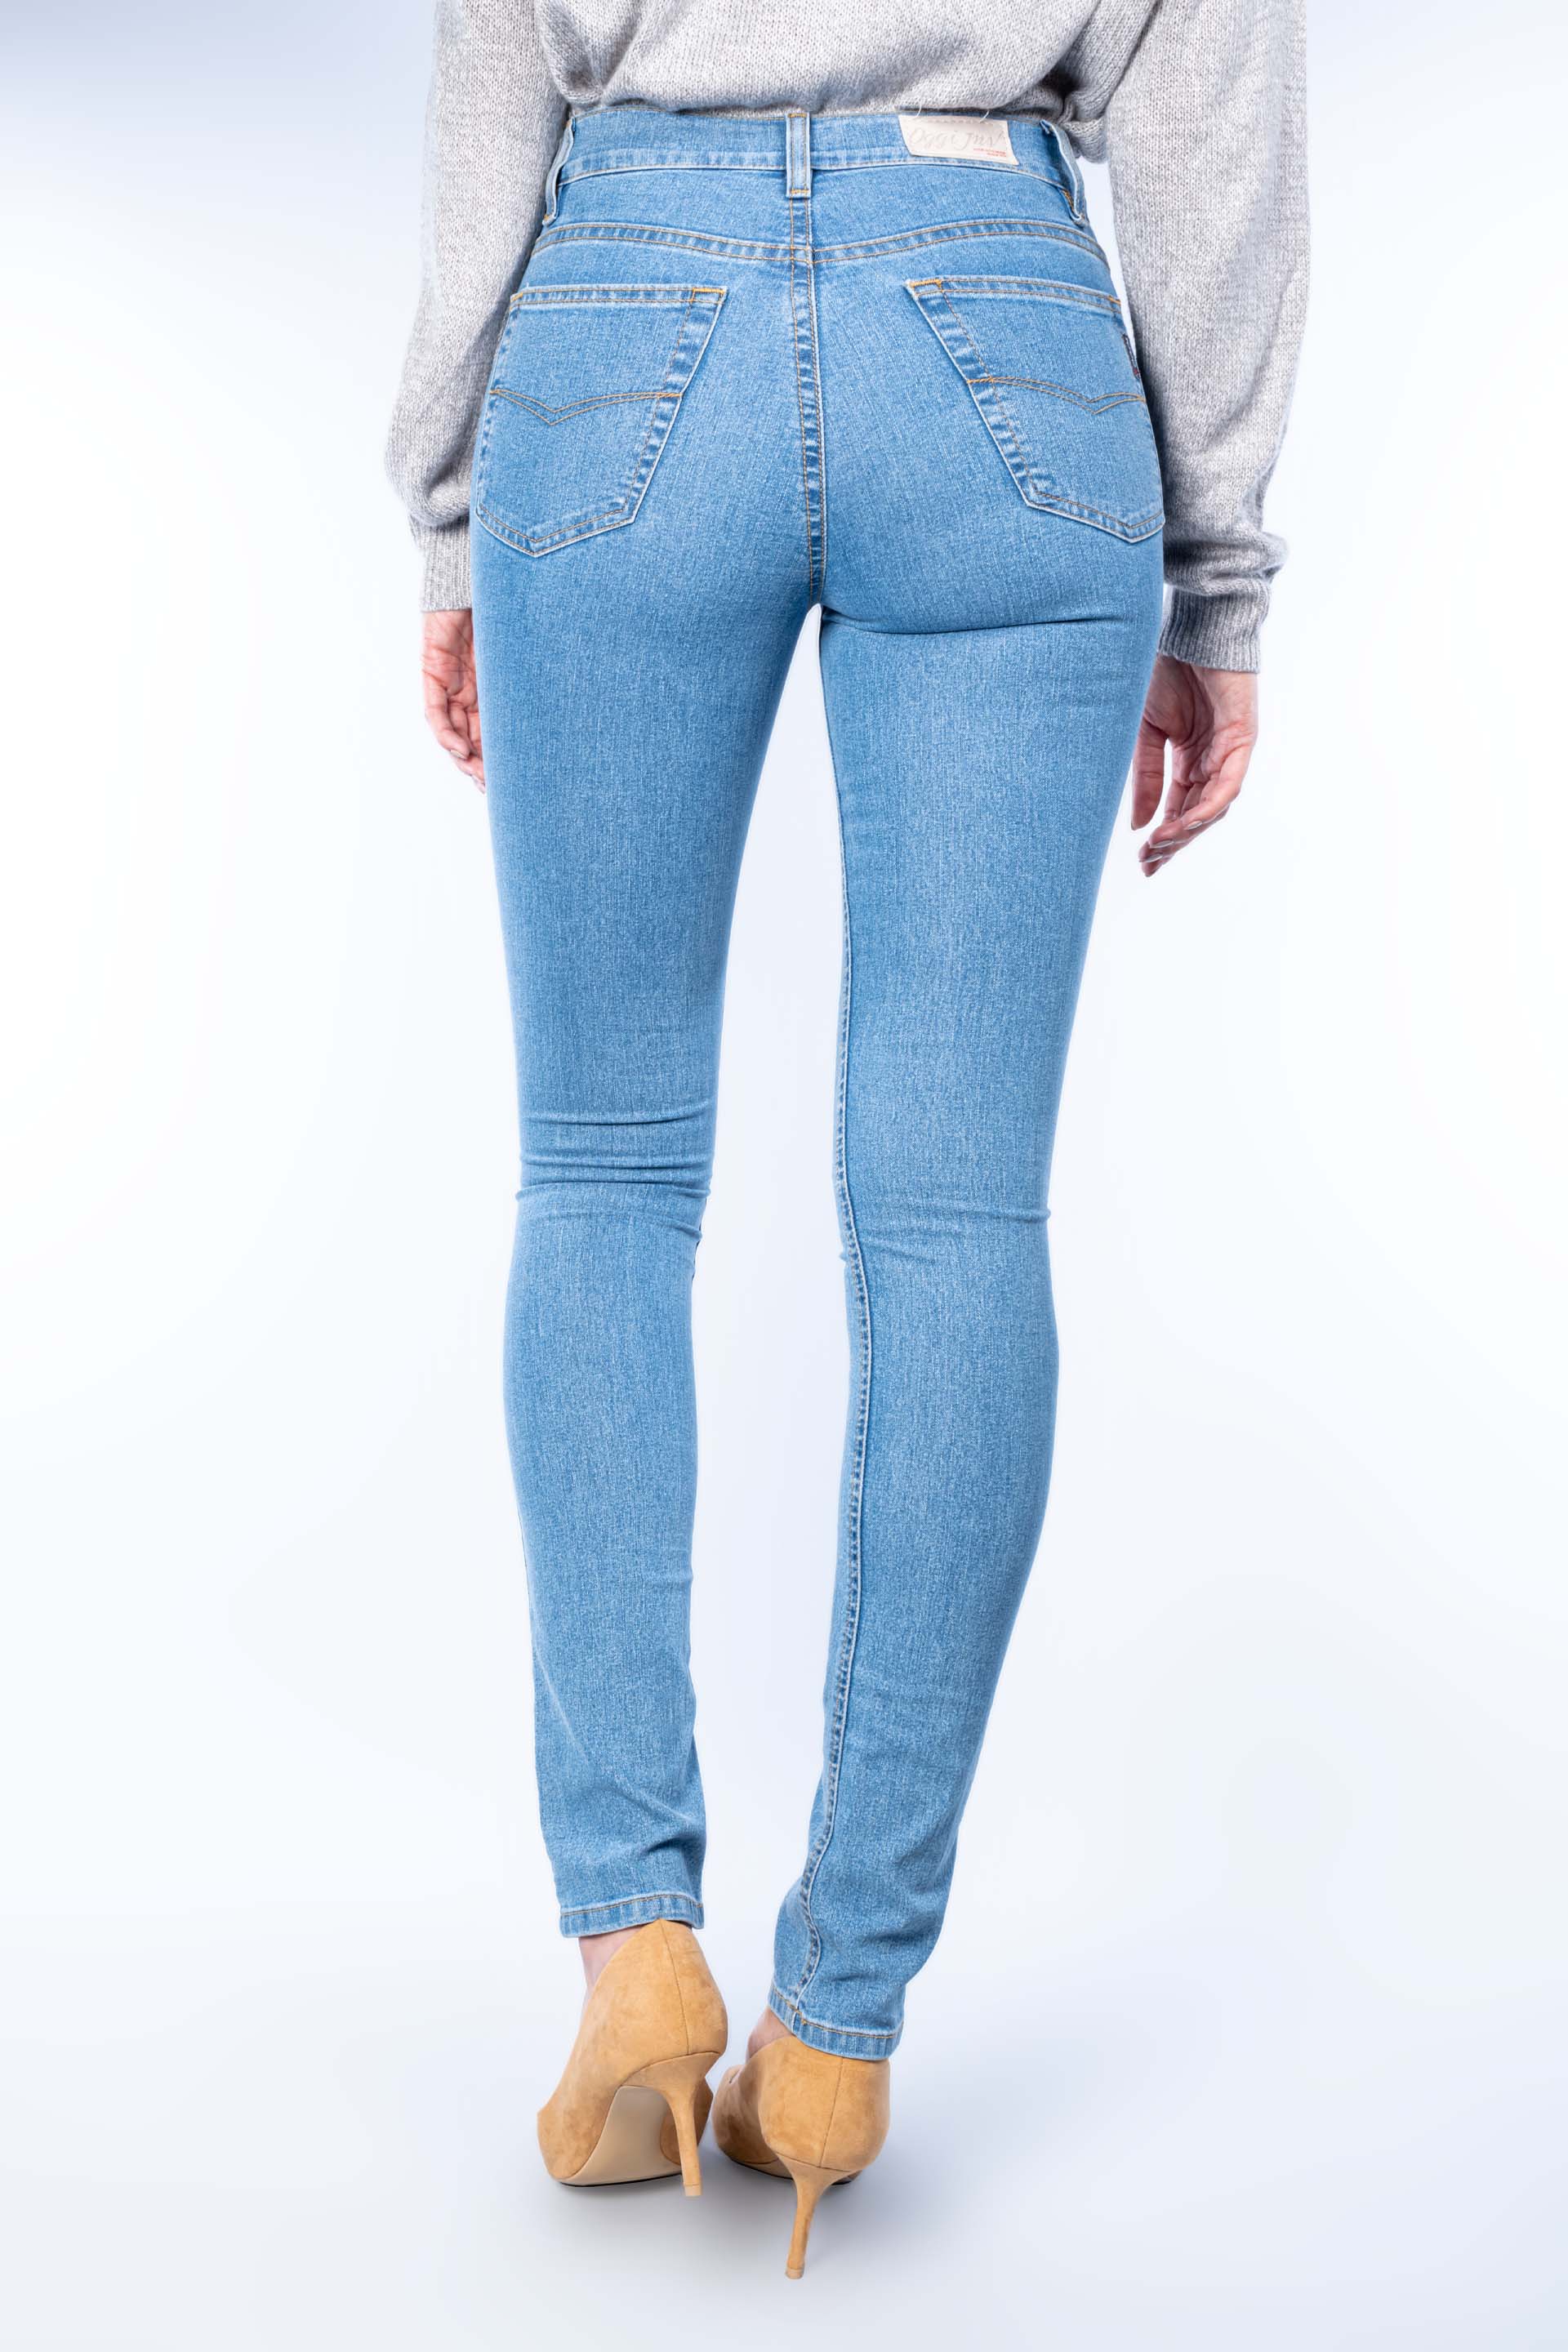 Pantalón jean para mujer - azul claro (ilusion collection)